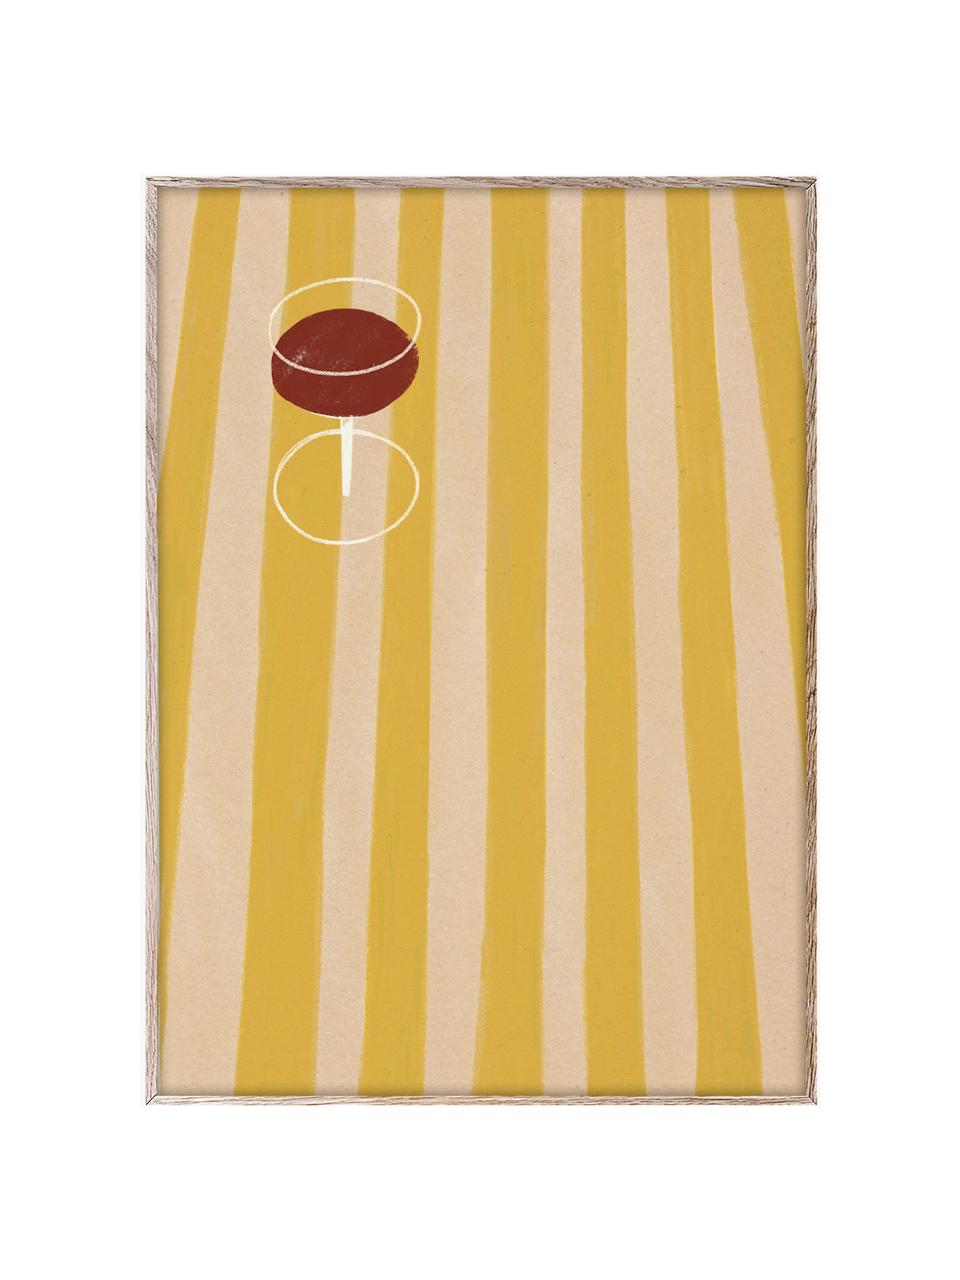 Poster SDO 04, 210 g mattes Hahnemühle-Papier, Digitaldruck mit 10 UV-beständigen Farben, Sonnengelb, Beige, Weinrot, B 30 x H 40 cm